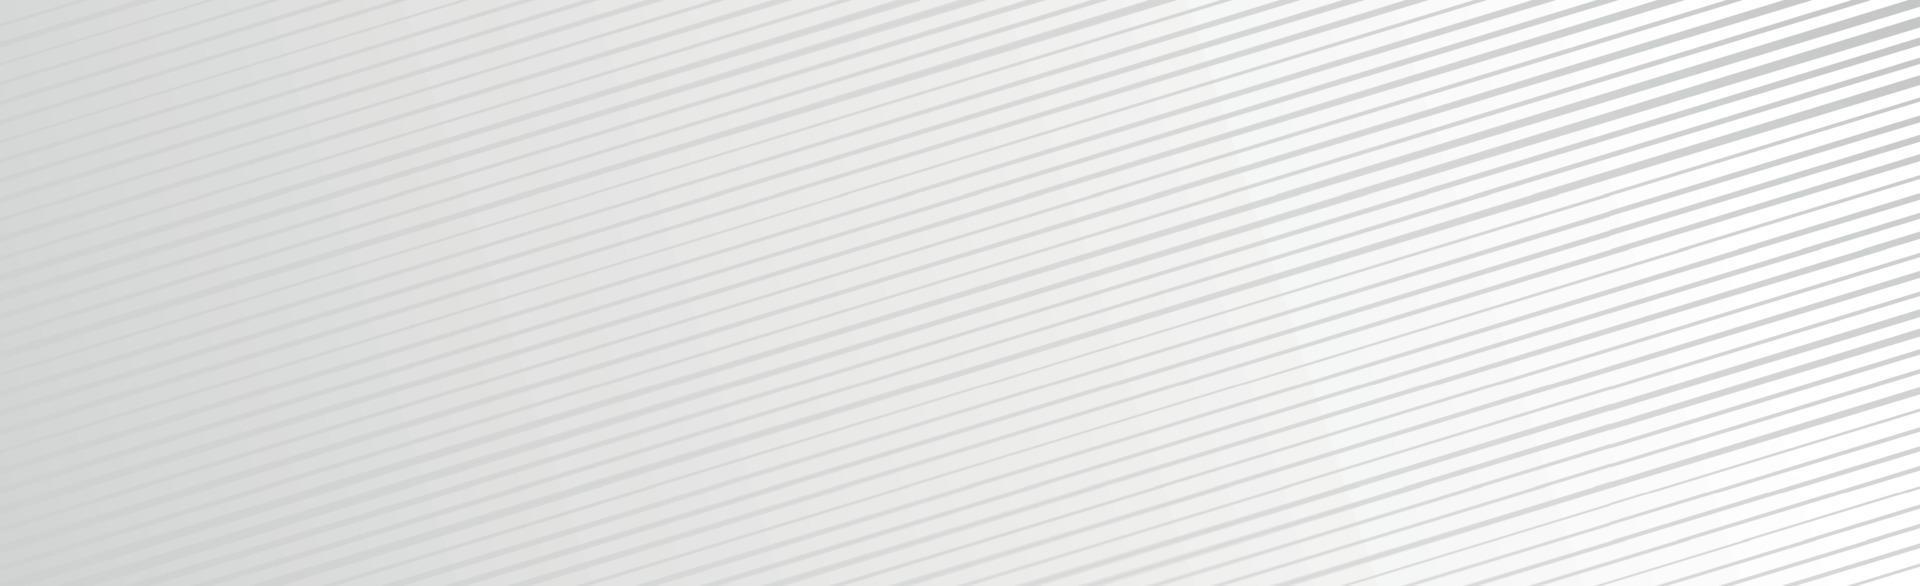 fond panoramique de vecteur blanc avec des lignes